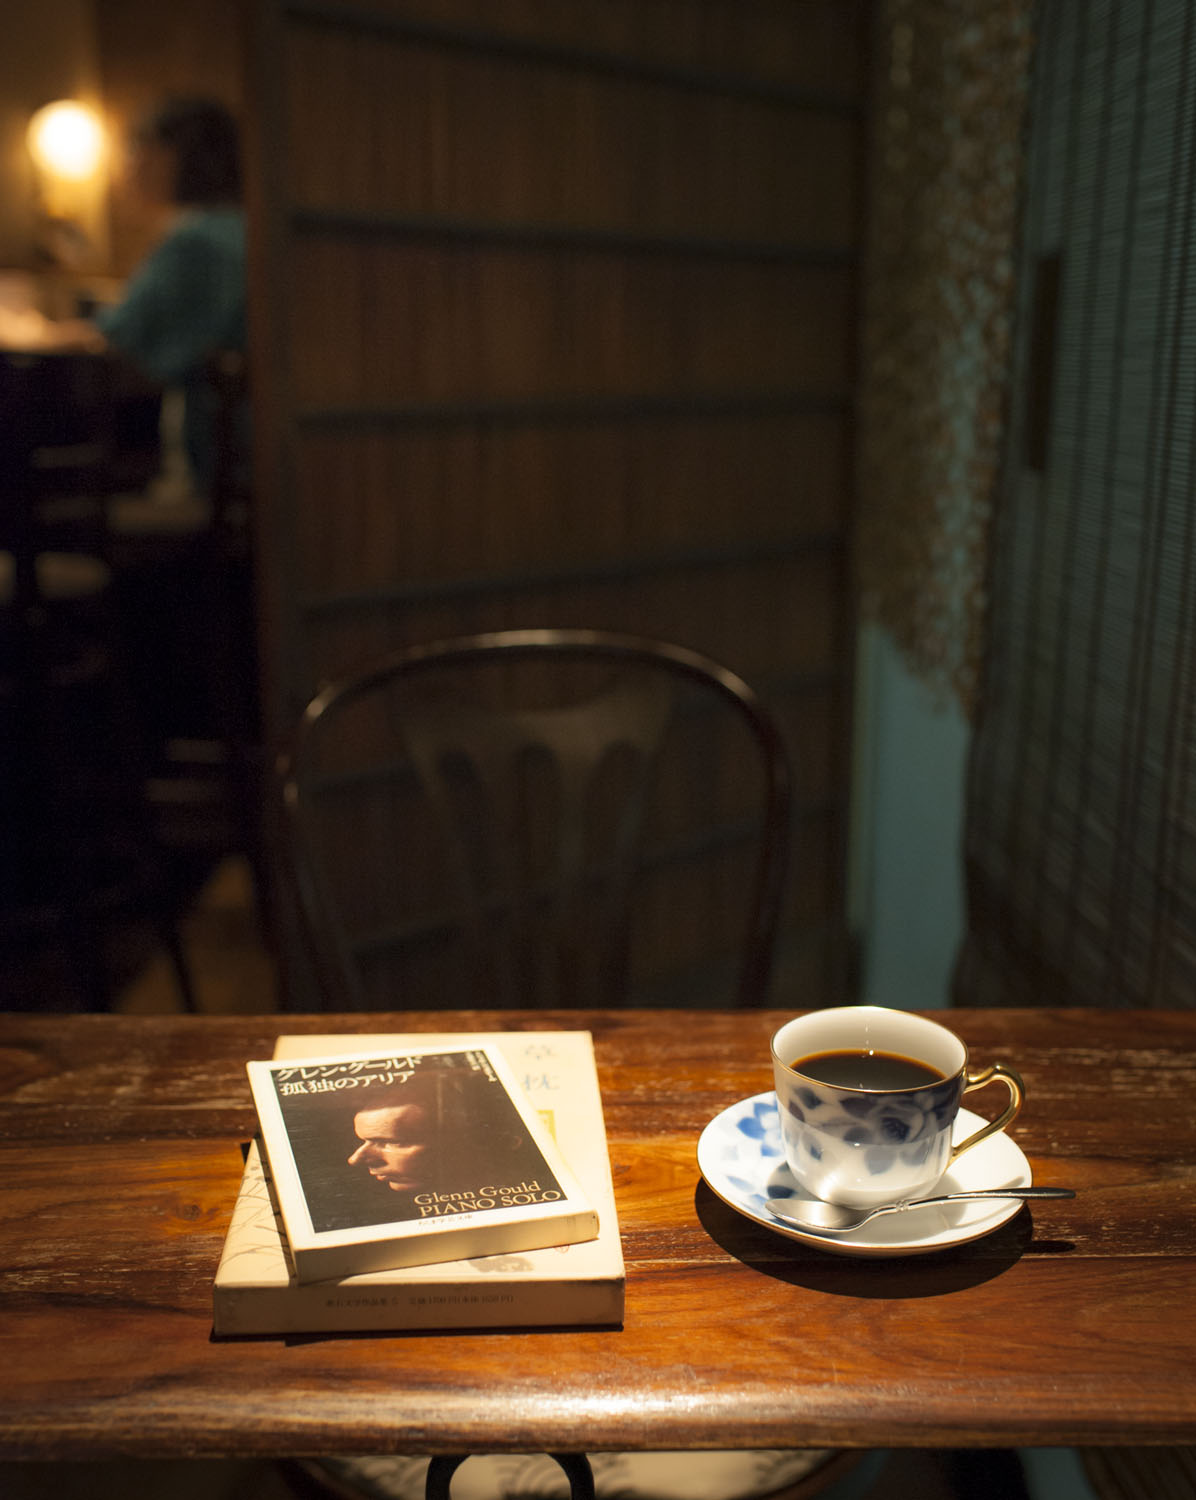 大好きなグレン・グールドが愛読した漱石『草枕』を店名に。コーヒー濃いめ700円。